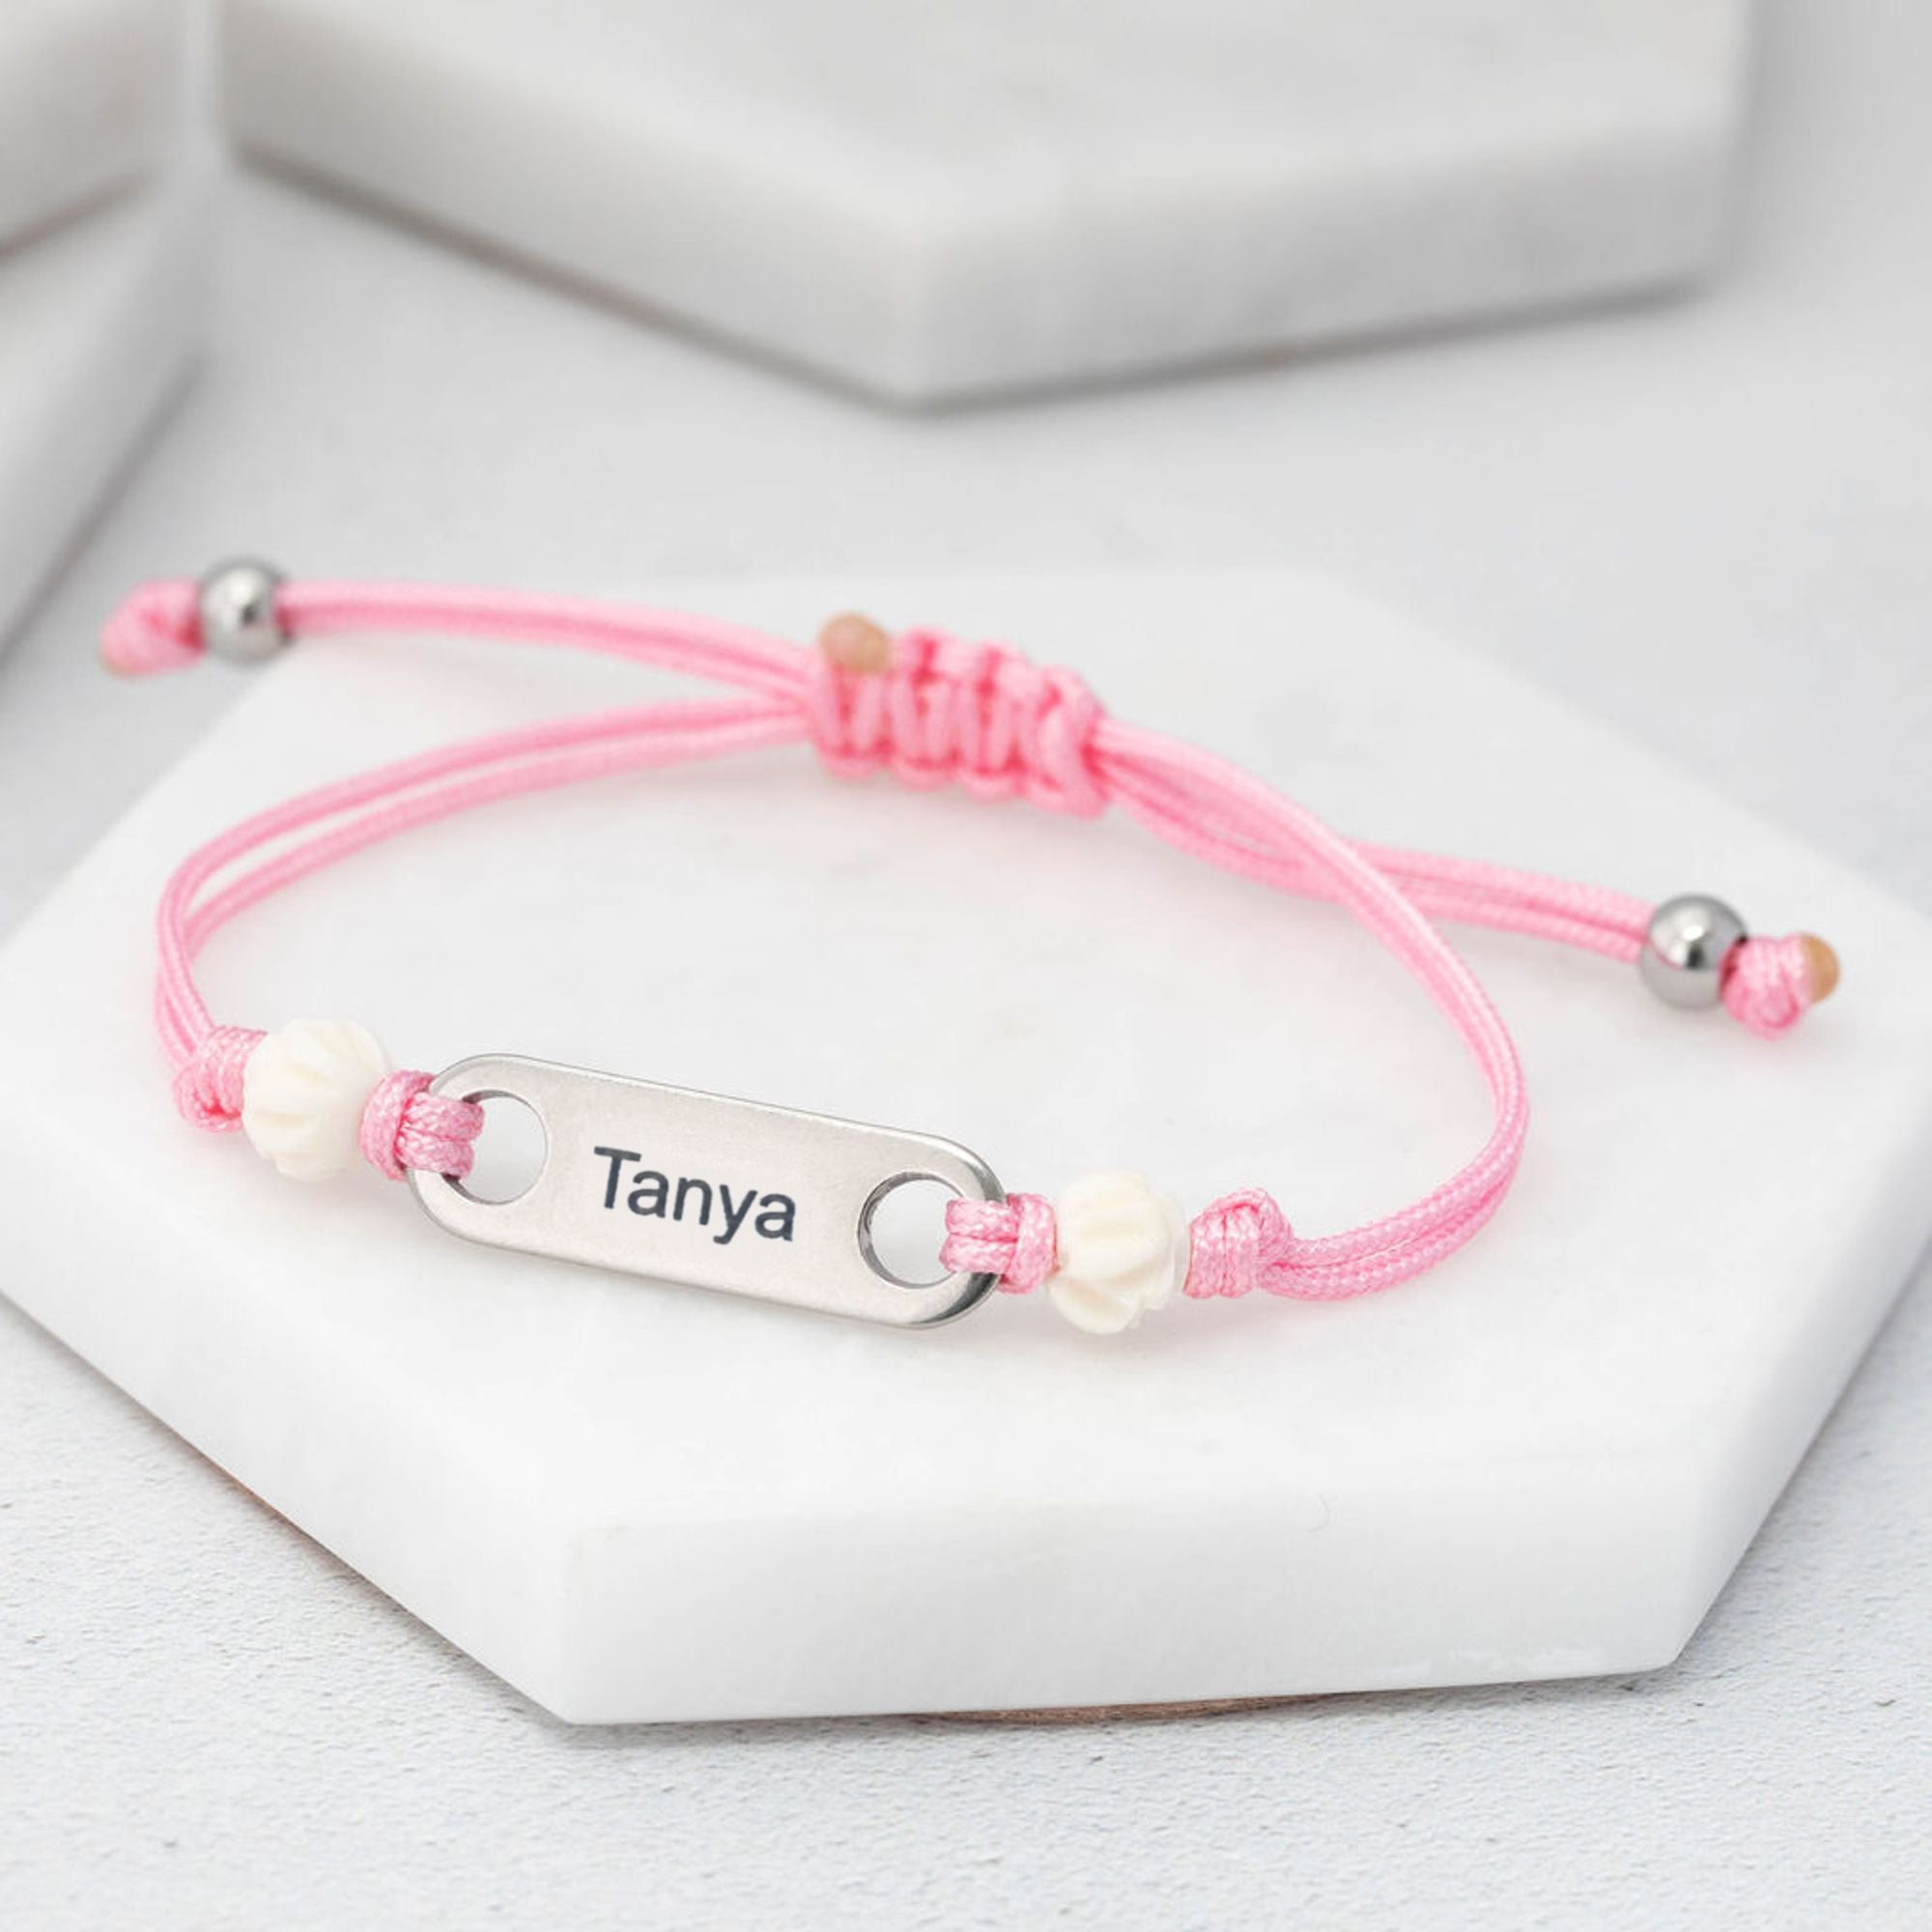 girls custom engraved bracelet birthday gift